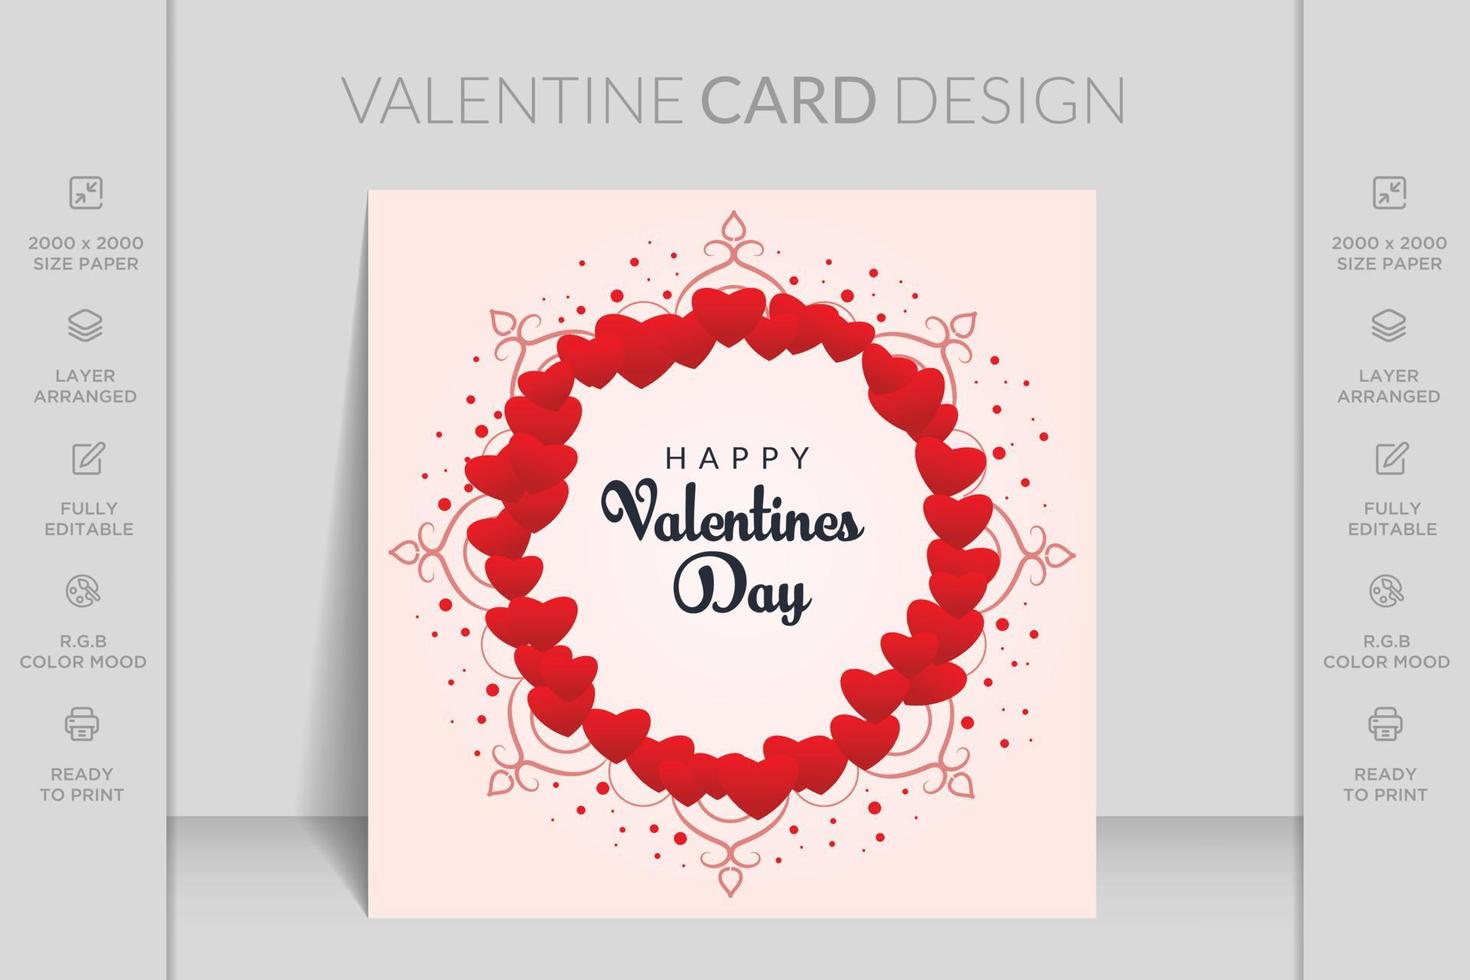 Happy Valentines Day Romantik-Grußkarte. perfekt für aufkleber, geburtstag, save the date einladung. romantische und niedliche elemente und schöne typografie. tapete, flyer, einladung, broschüre, banner vektor